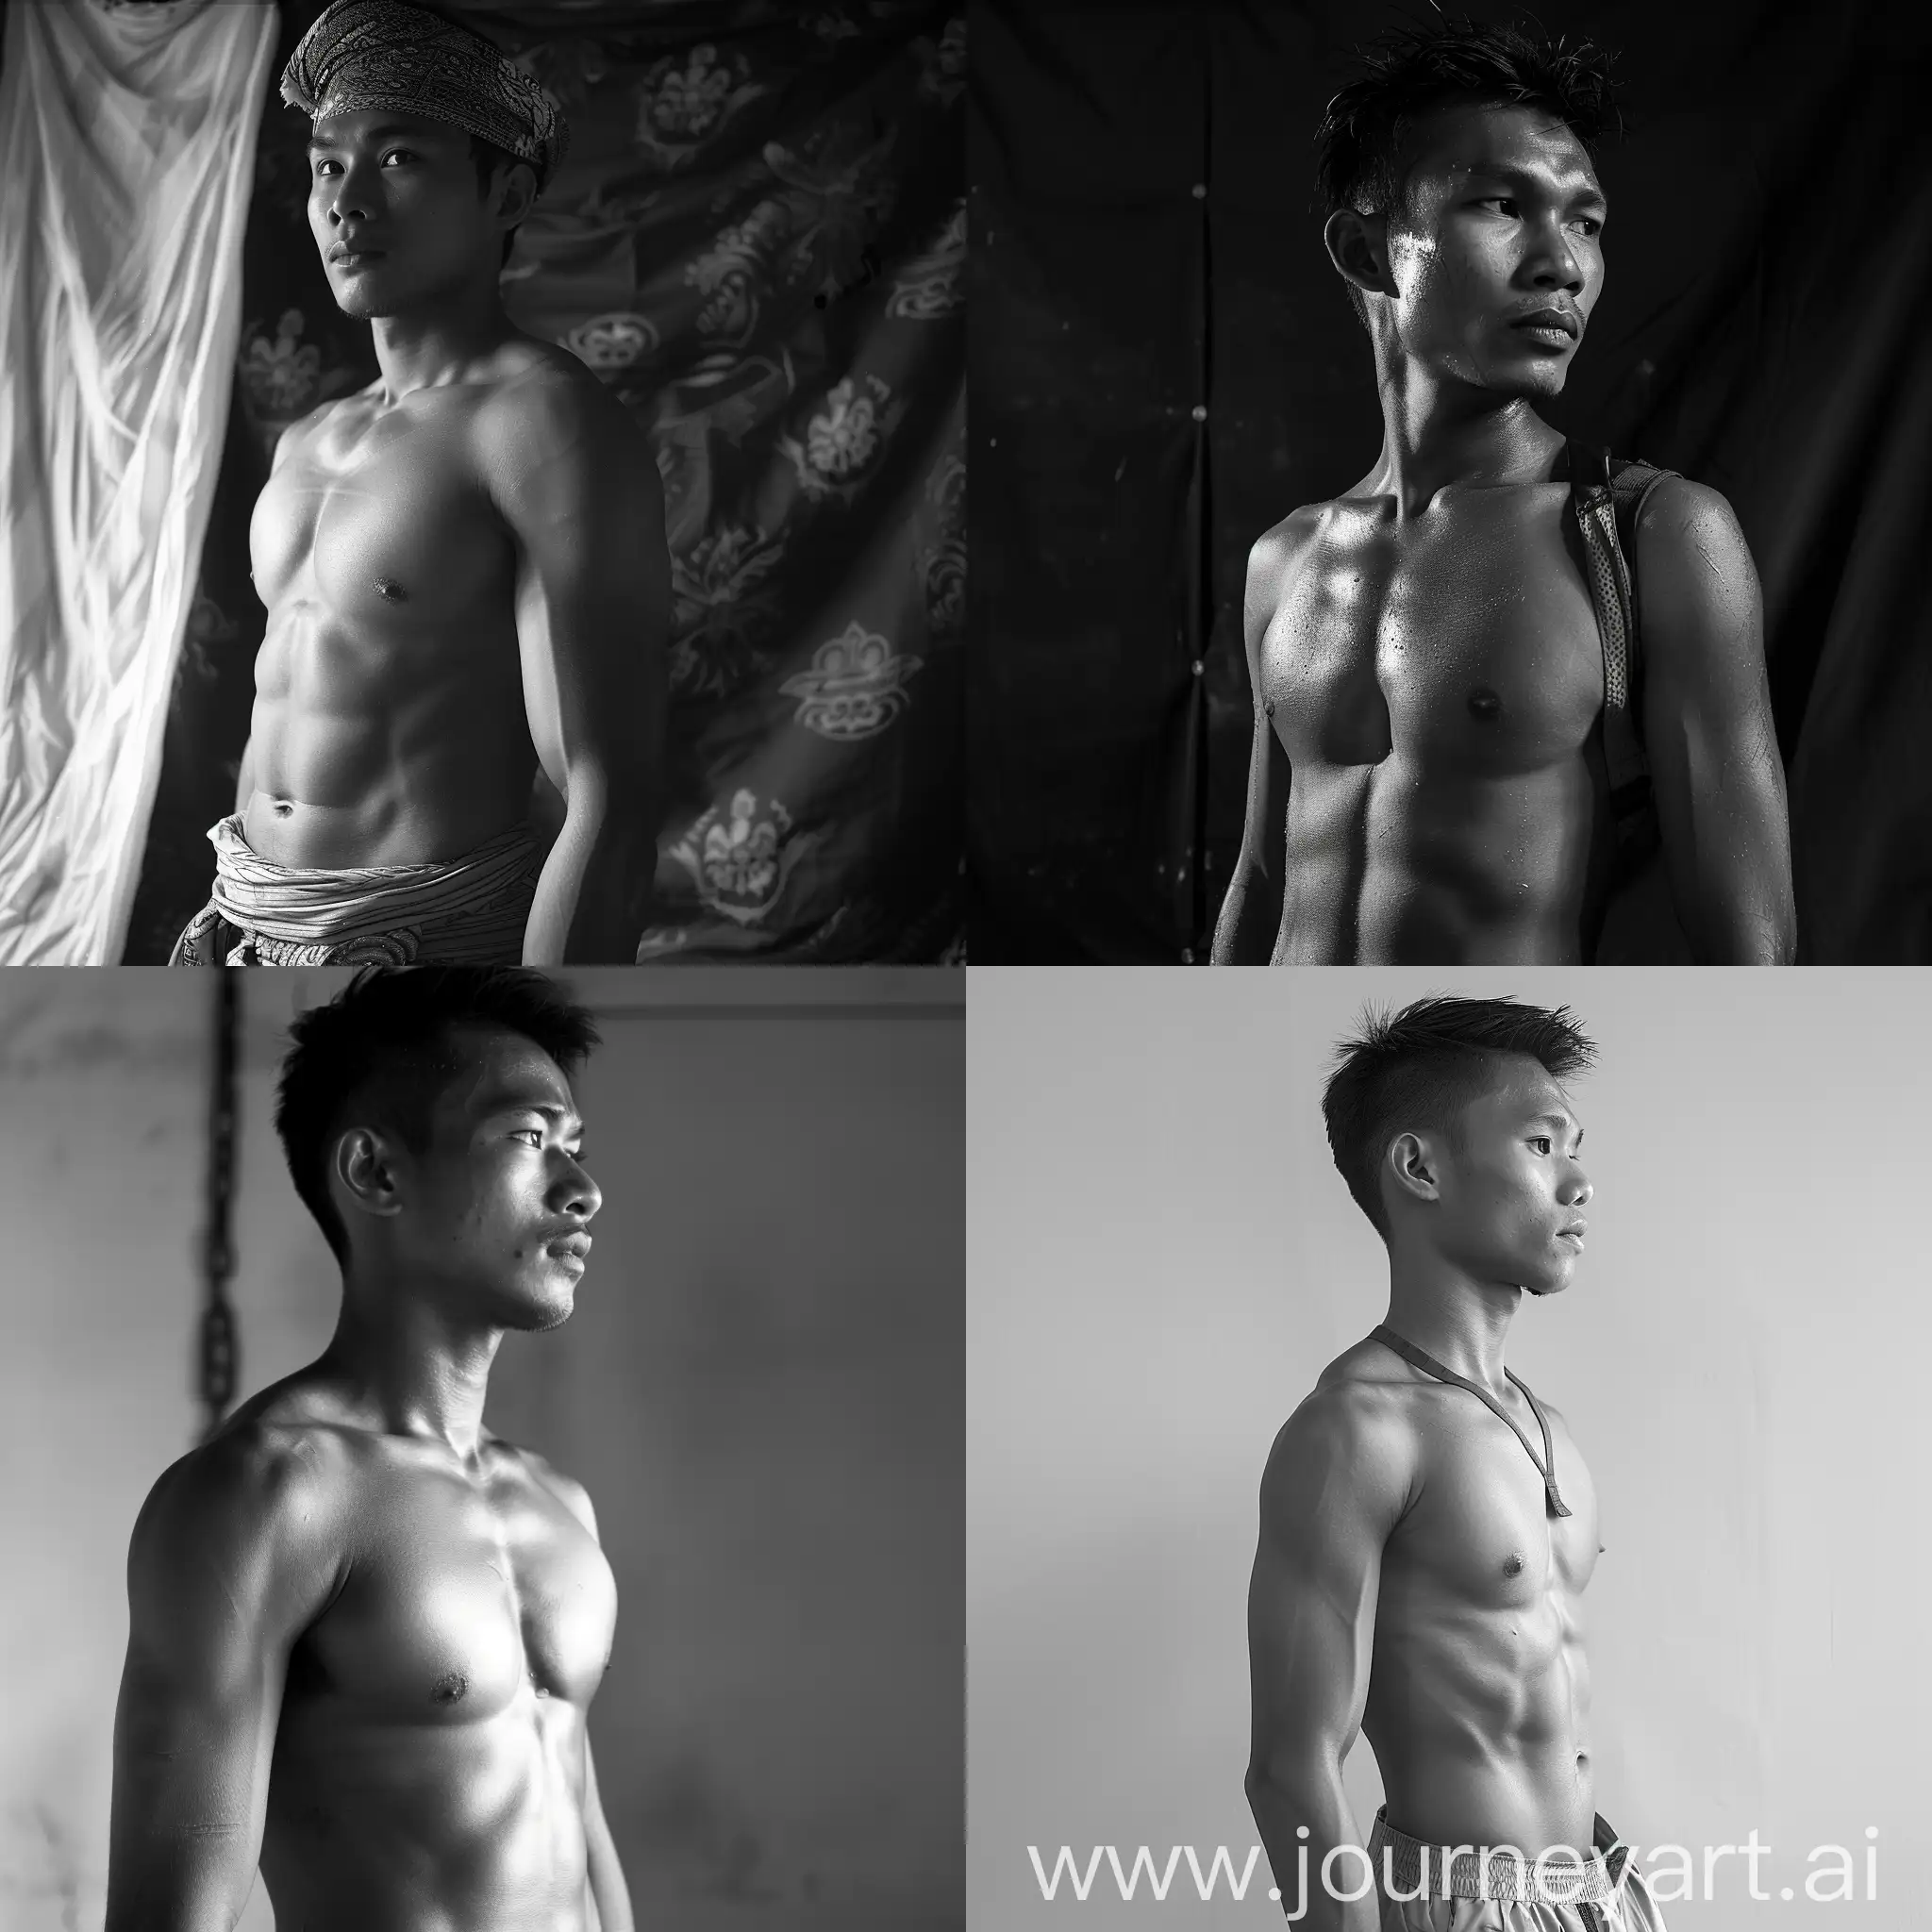 A slim and shirtless Malay man,